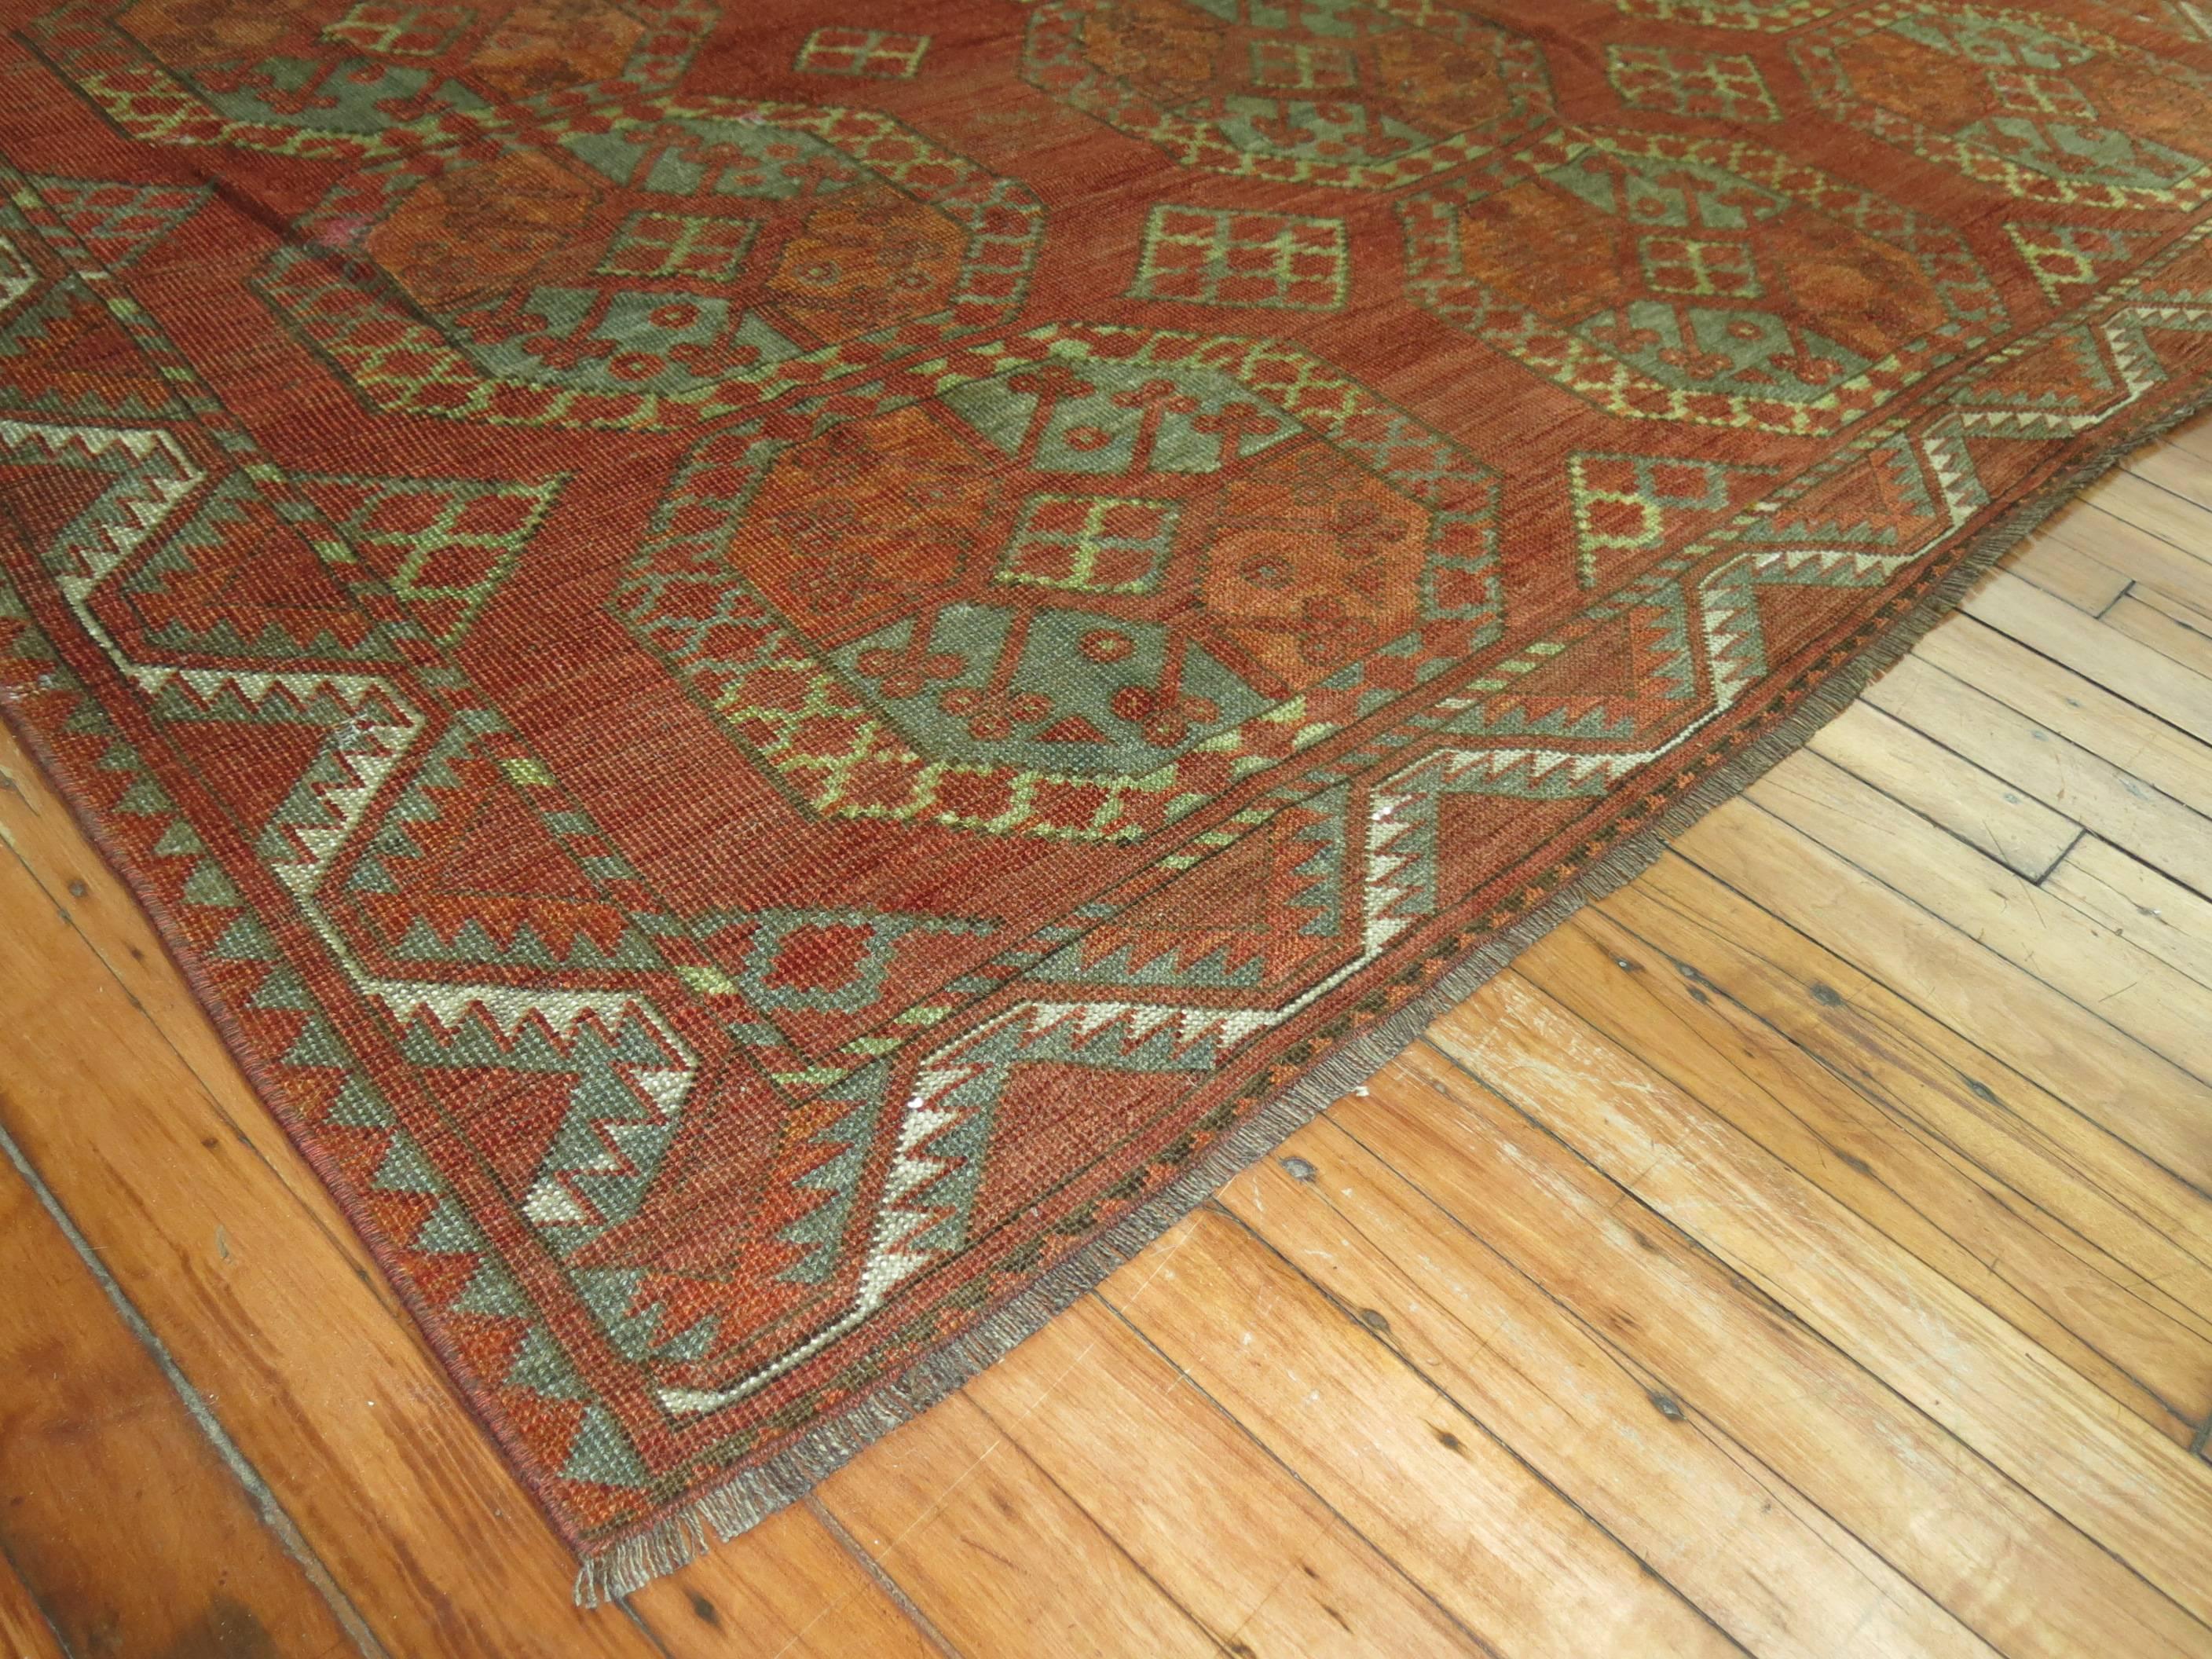 Ein antiker Ersari-Teppich aus dem späten 19. Jahrhundert in vorherrschenden Braun-, Terrakotta- und Grüntönen.

Größe: 6'9